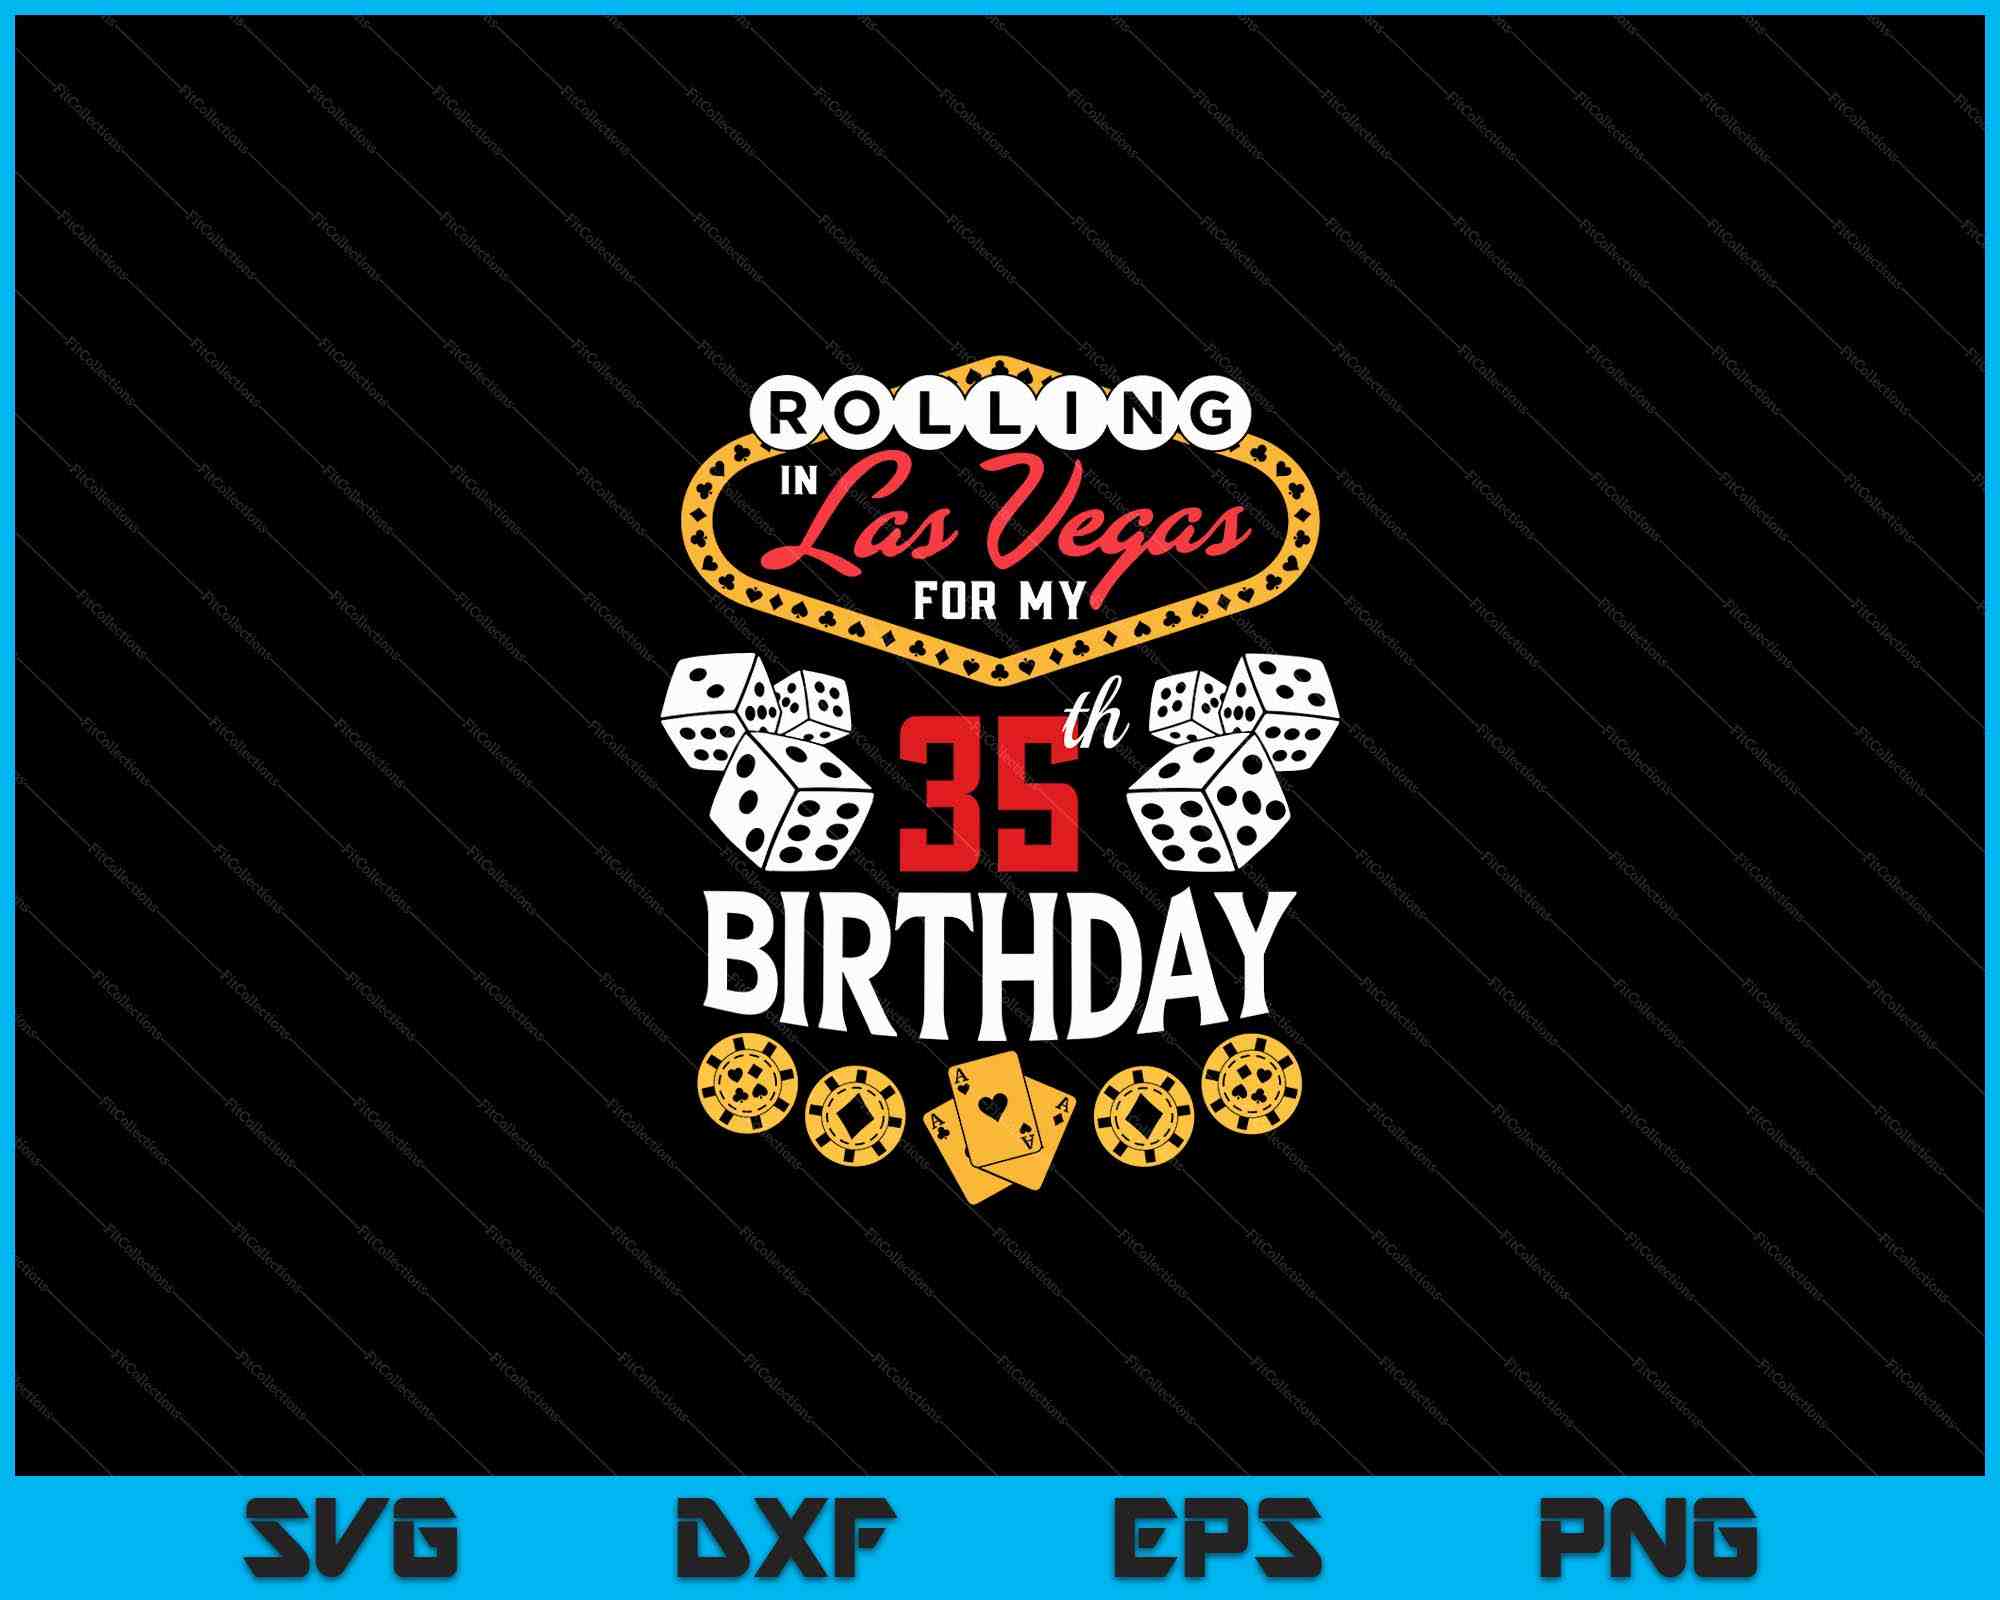 Las Vegas Sign SVG, PNG, PDF, Welcome Sign SVG